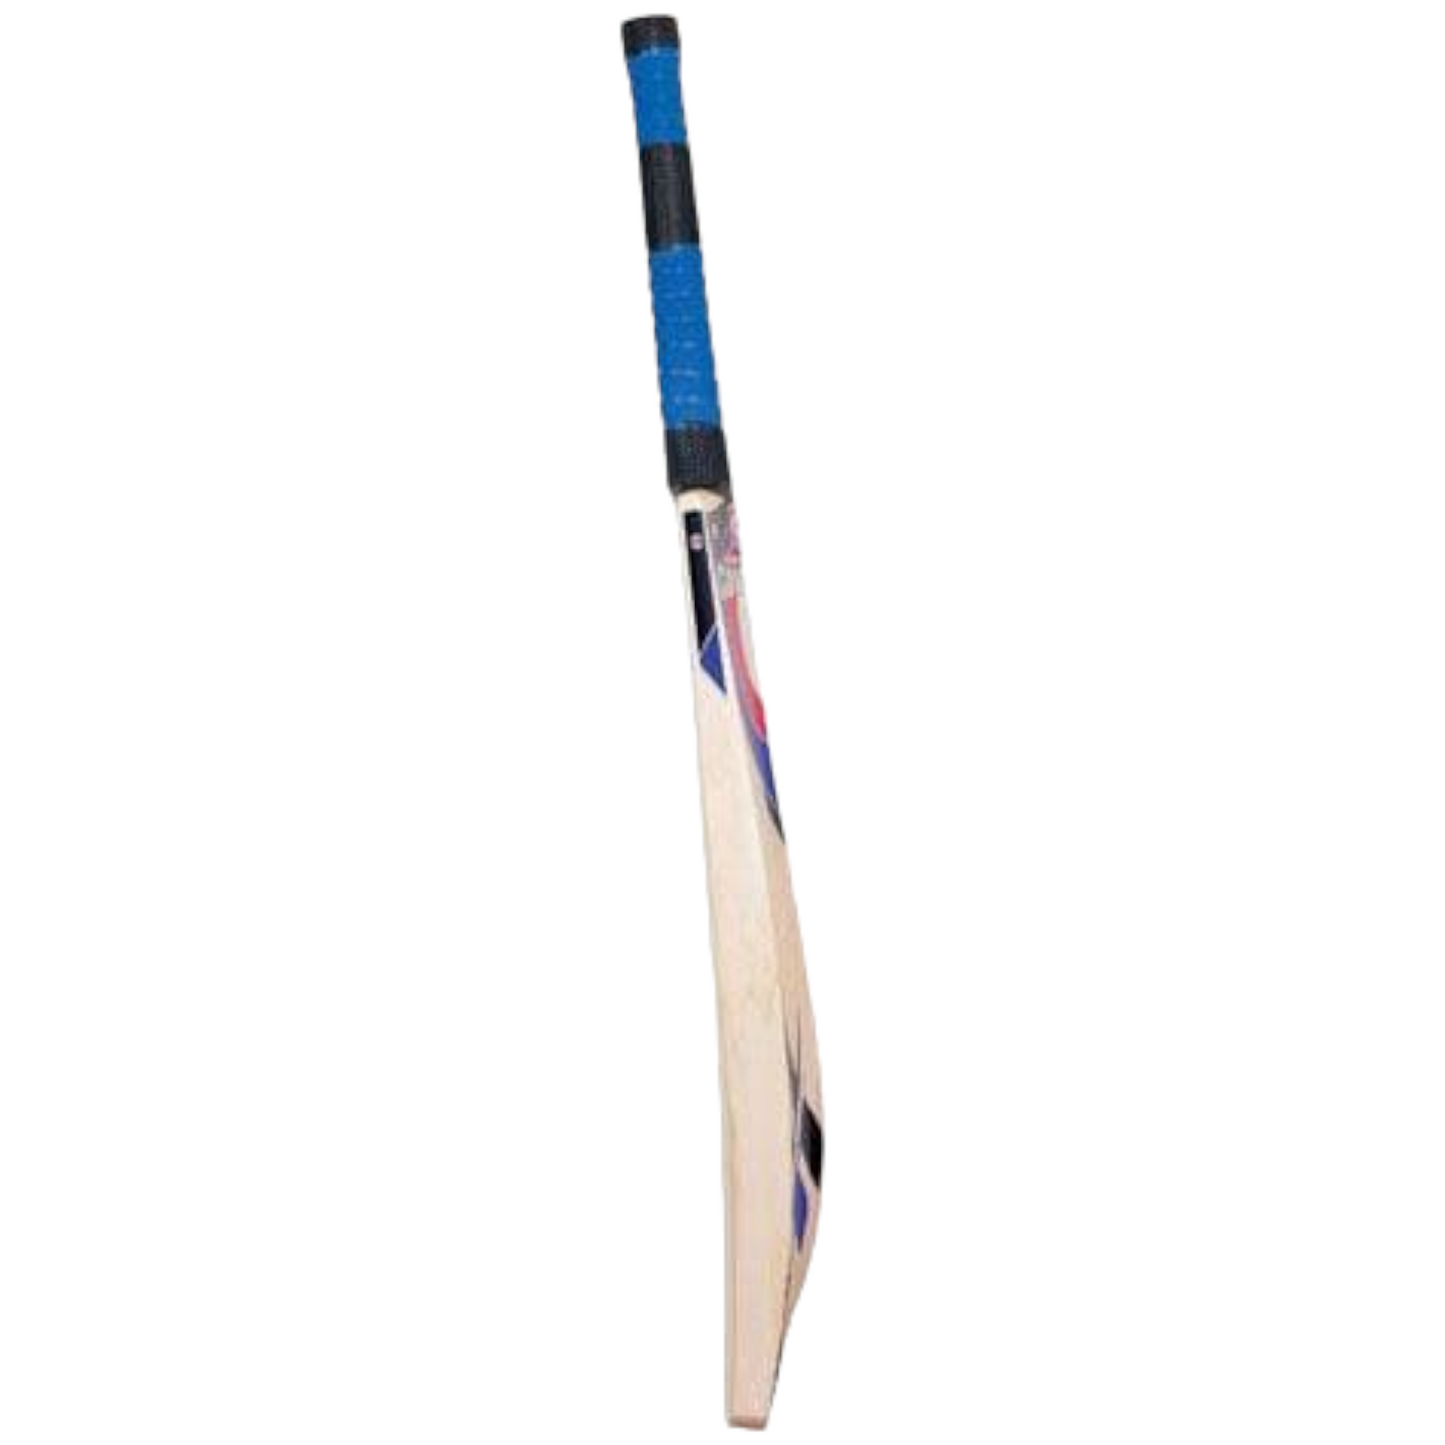 Hunts Count Reflex MBP 600 Cricket Bat